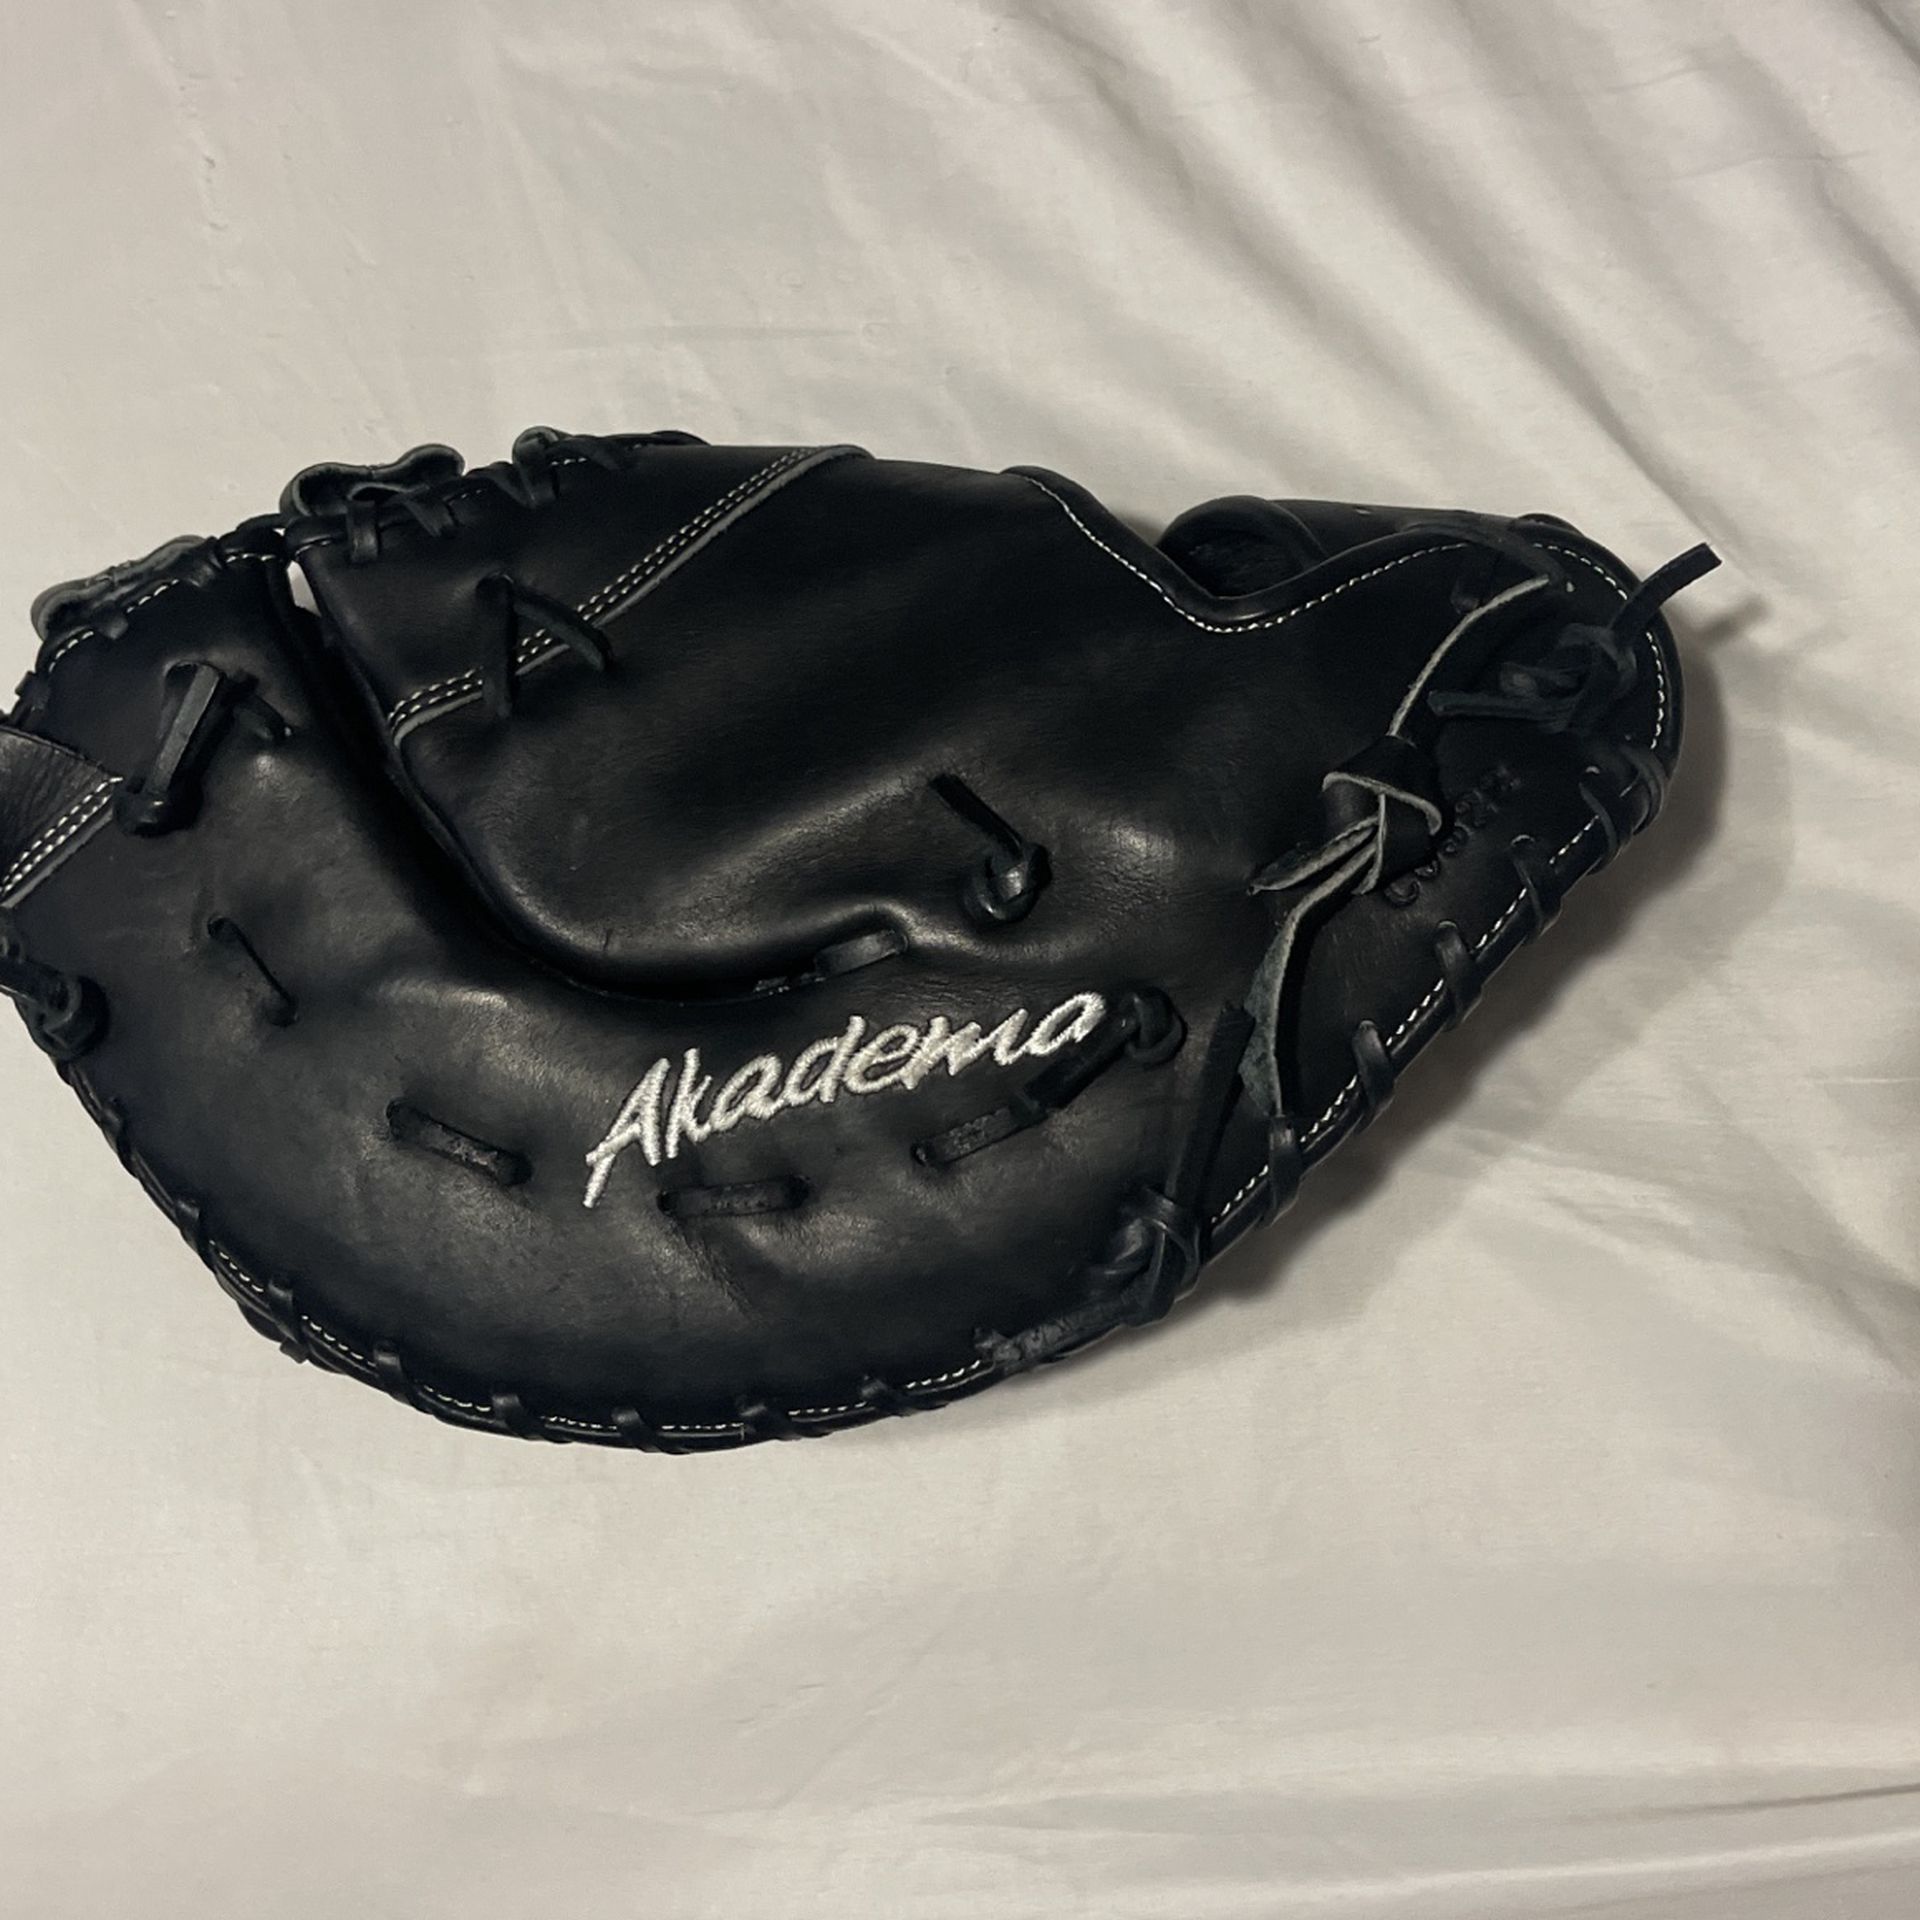 1st Baseball Glove